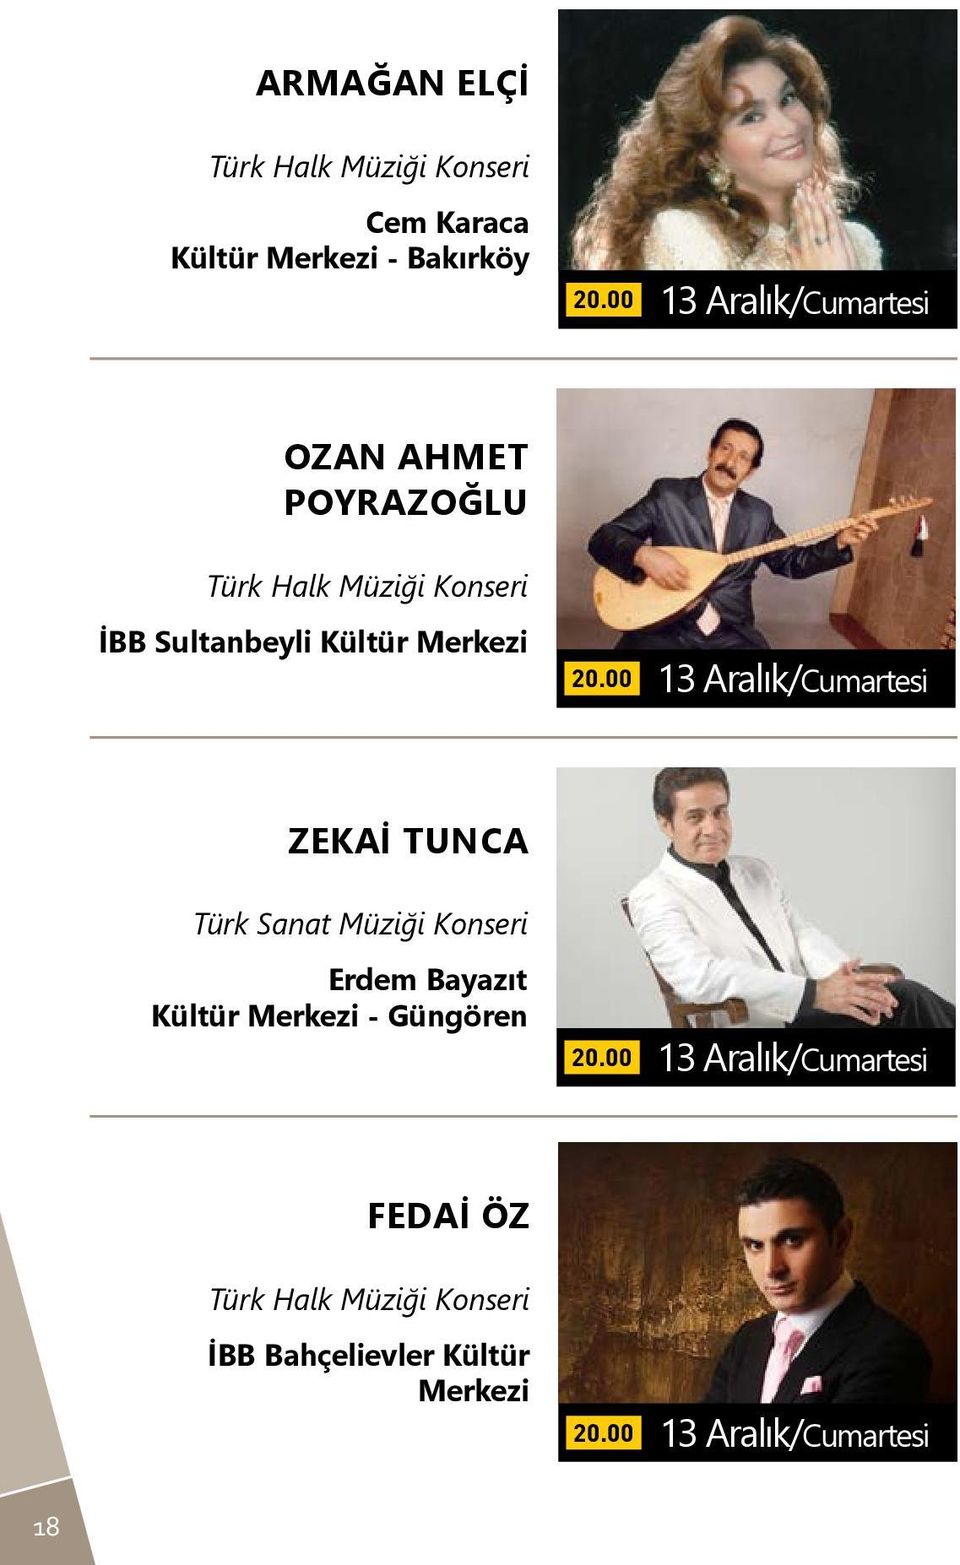 Aralık/Cumartesi Zekai Tunca Türk Sanat Müziği Konseri Erdem Bayazıt Kültür Merkezi - Güngören